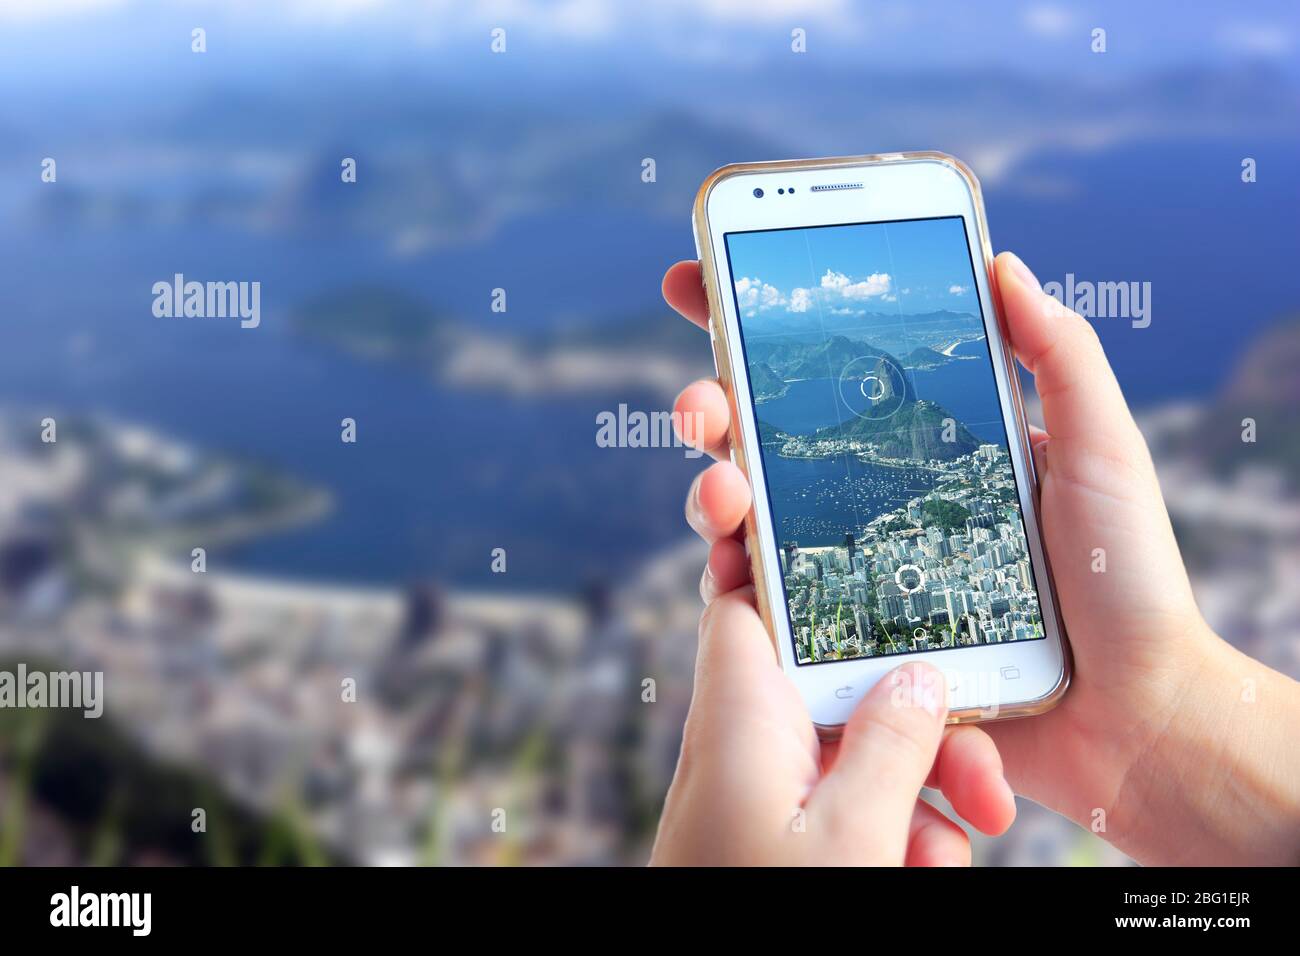 Rio de Janeiro, Brasilien. Fotokamera eines Smartphones. Sehen Sie durch den Bildschirm, wenn eine junge Frau das Bild aufnimmt. Stockfoto